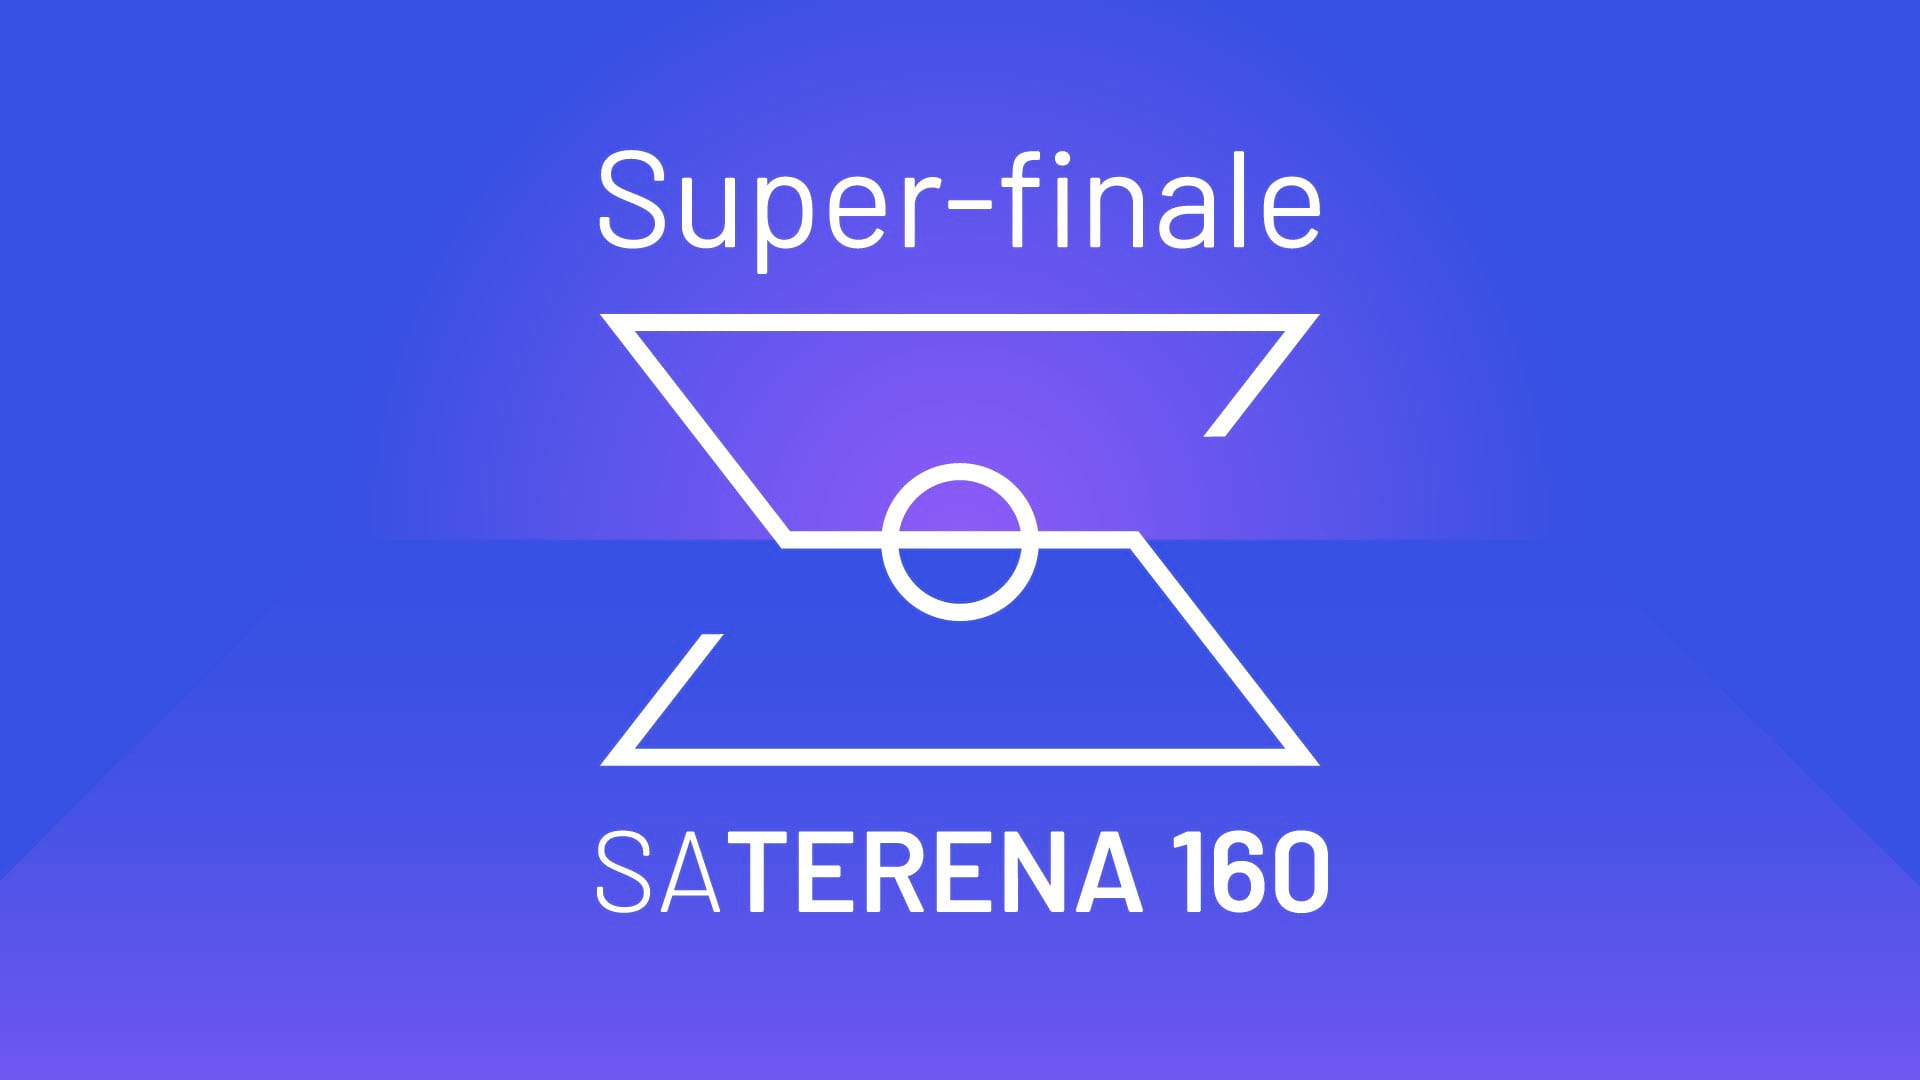 Sa terena 160: Super-finale